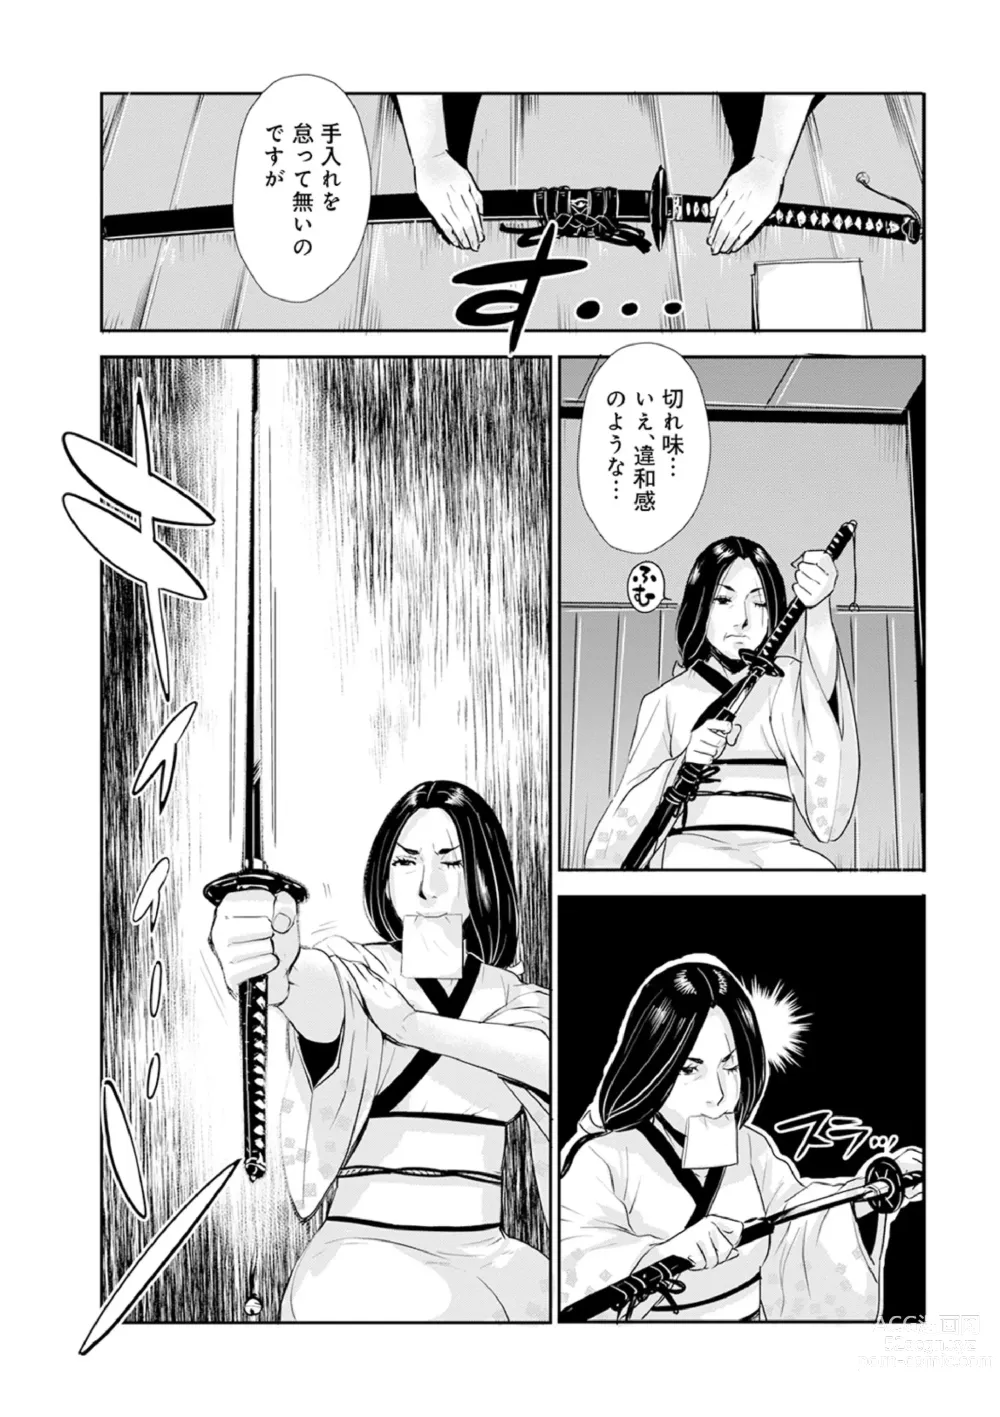 Page 9 of manga Harami samurai 12 ~Sekigan no Tosho no Nuresoboru Futanari no Kanjuku Dankon Nyotai~